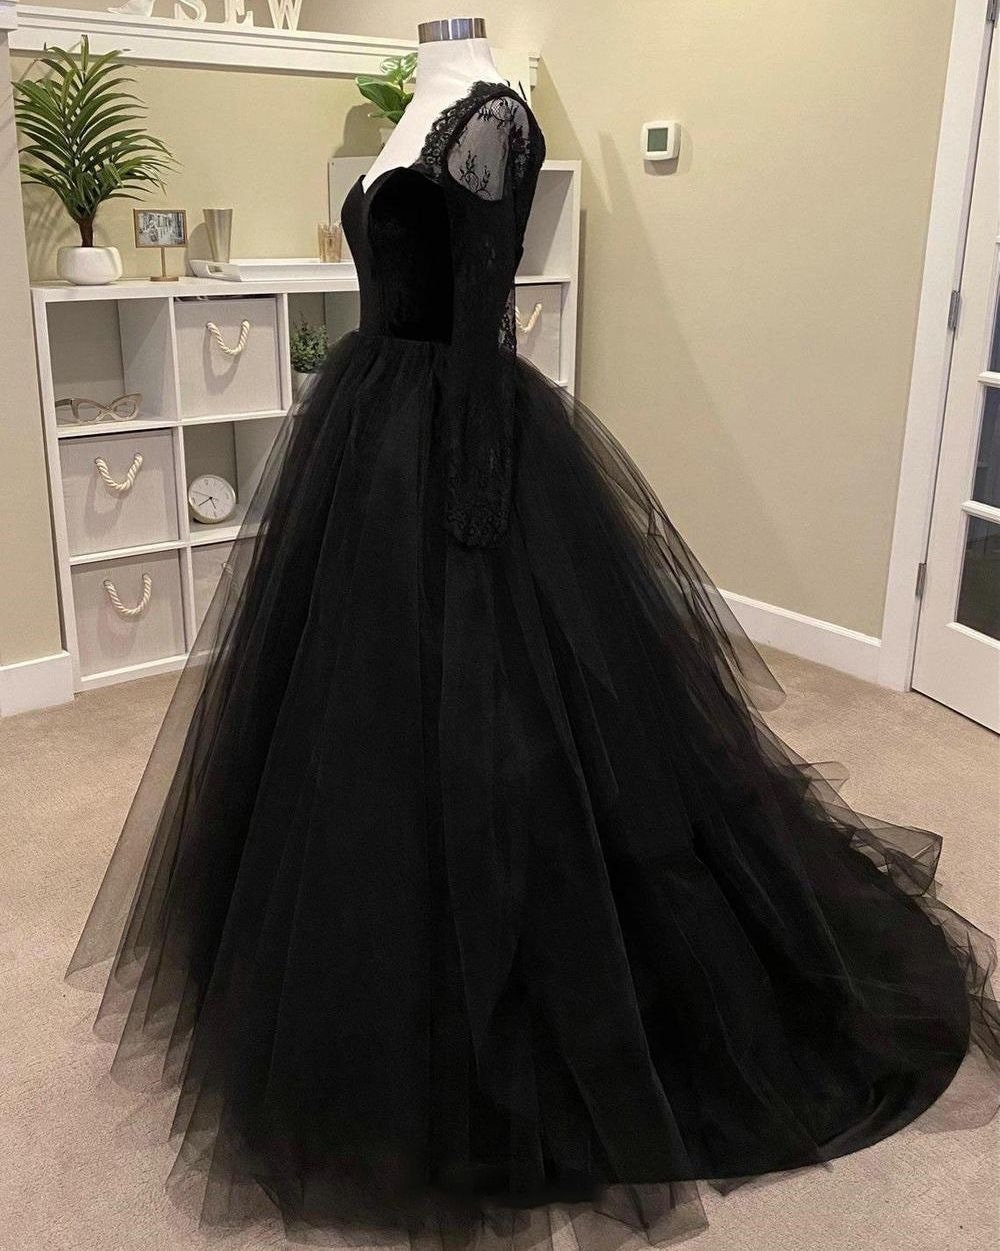 Black Bridal Dress With Velvet Top Fluffy Tulle Skirt With - Etsy